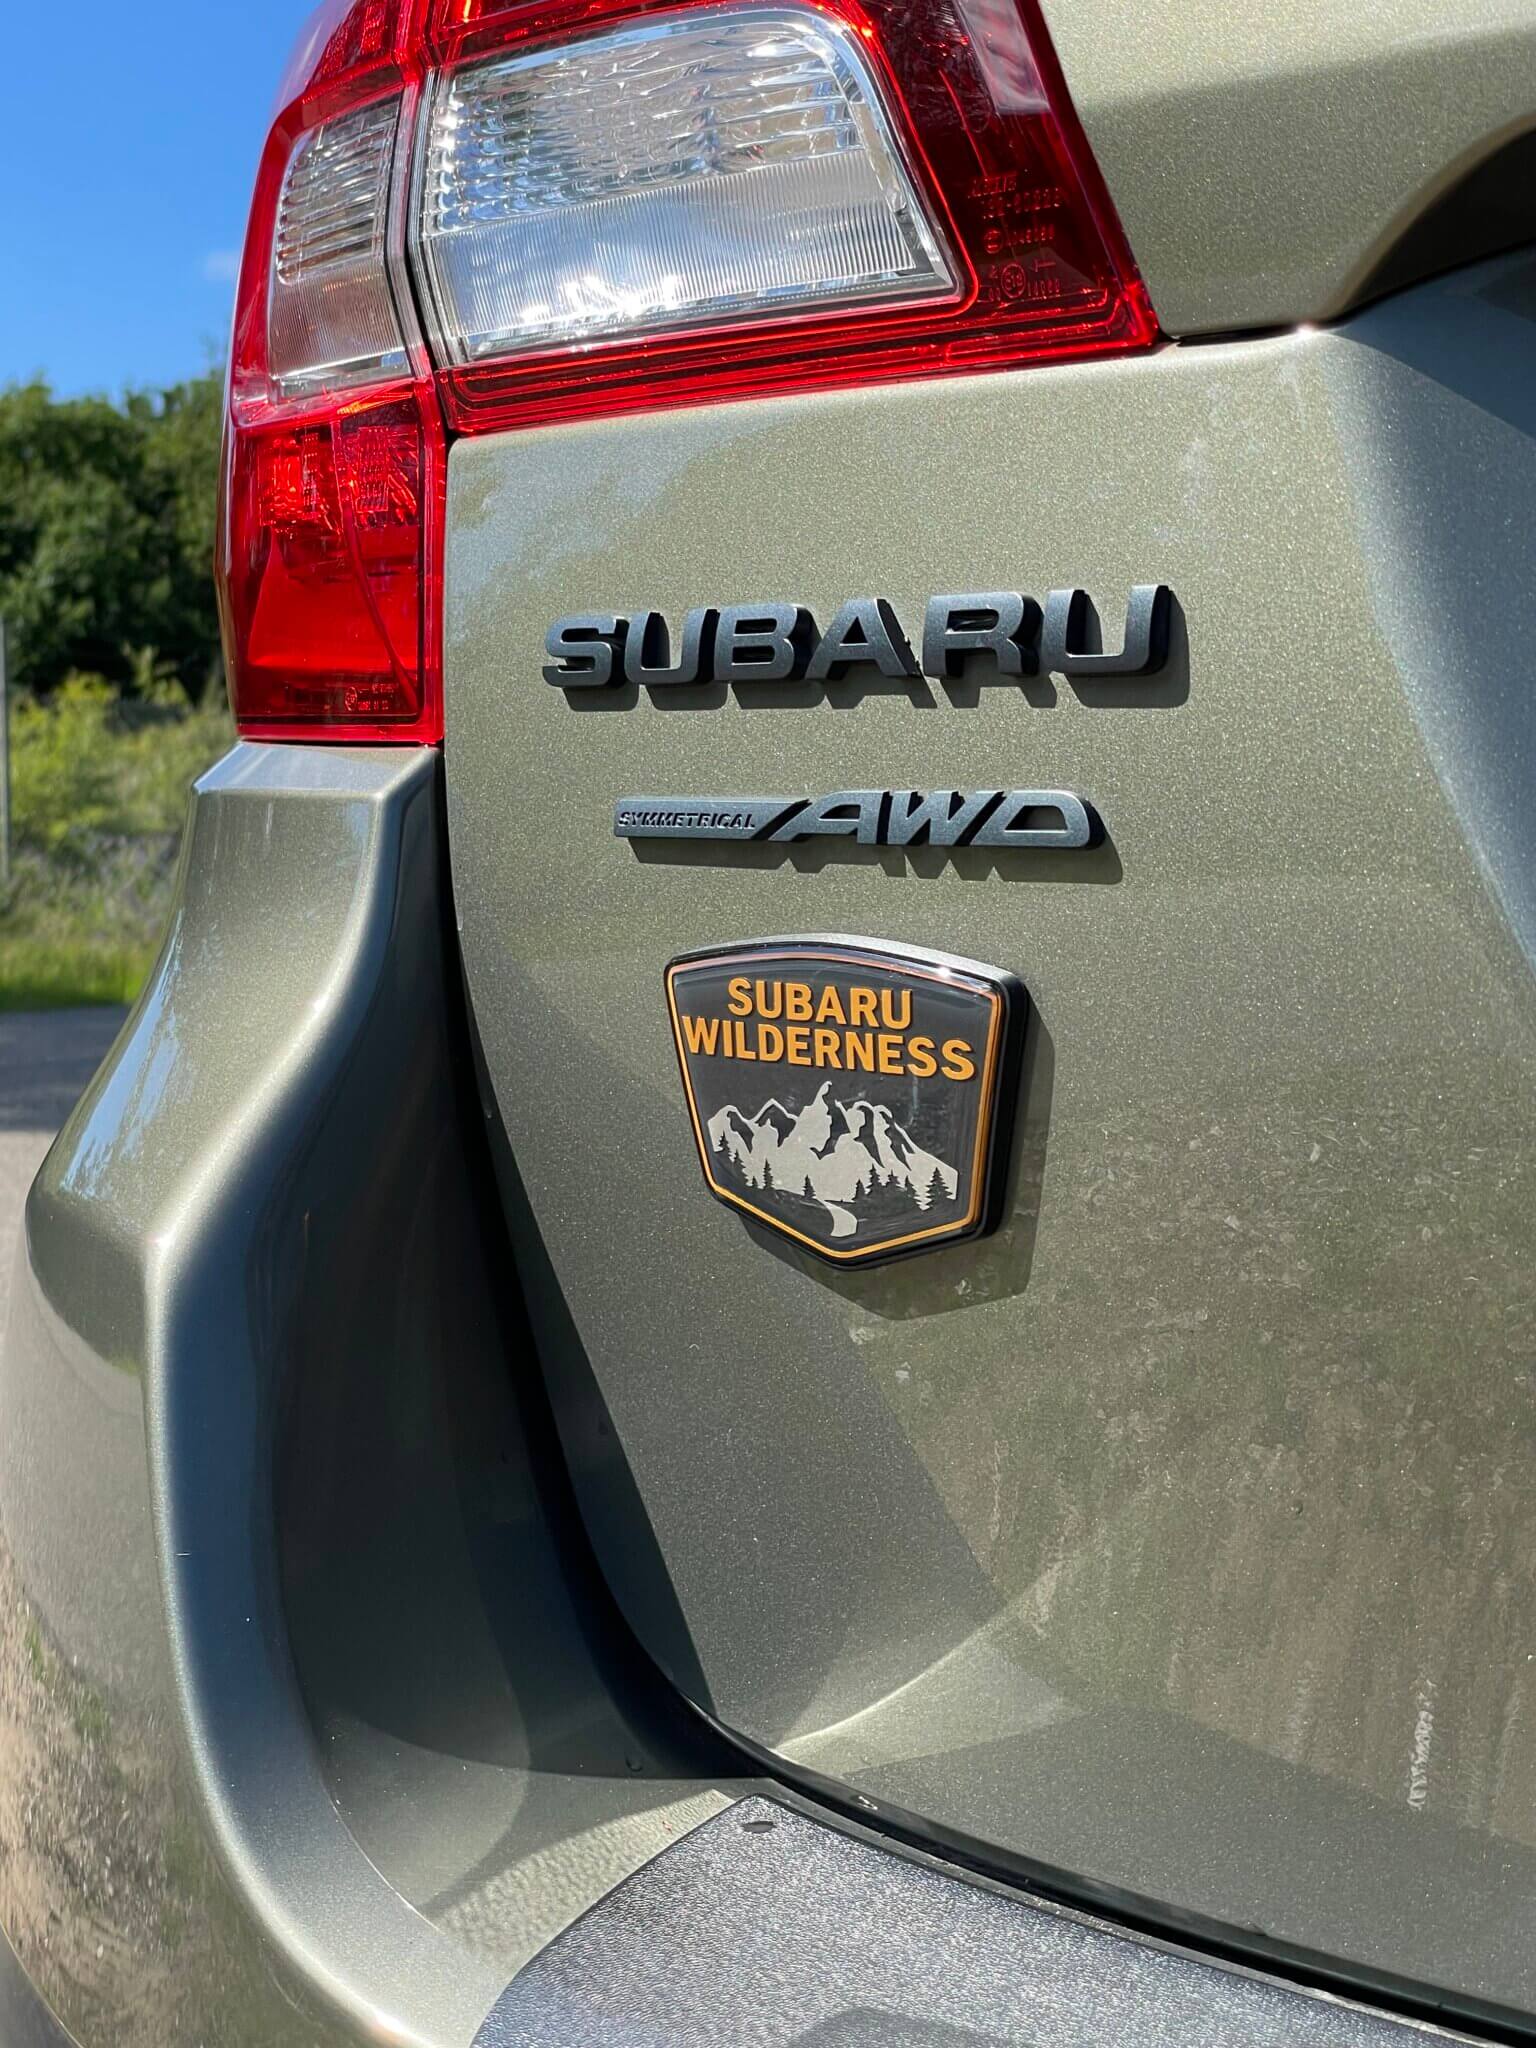 Subaru Outback advance X, voorzien van readylift liftkit bij niestcar Heemskerk. Adventure in Nederland. Subaru Wilderness